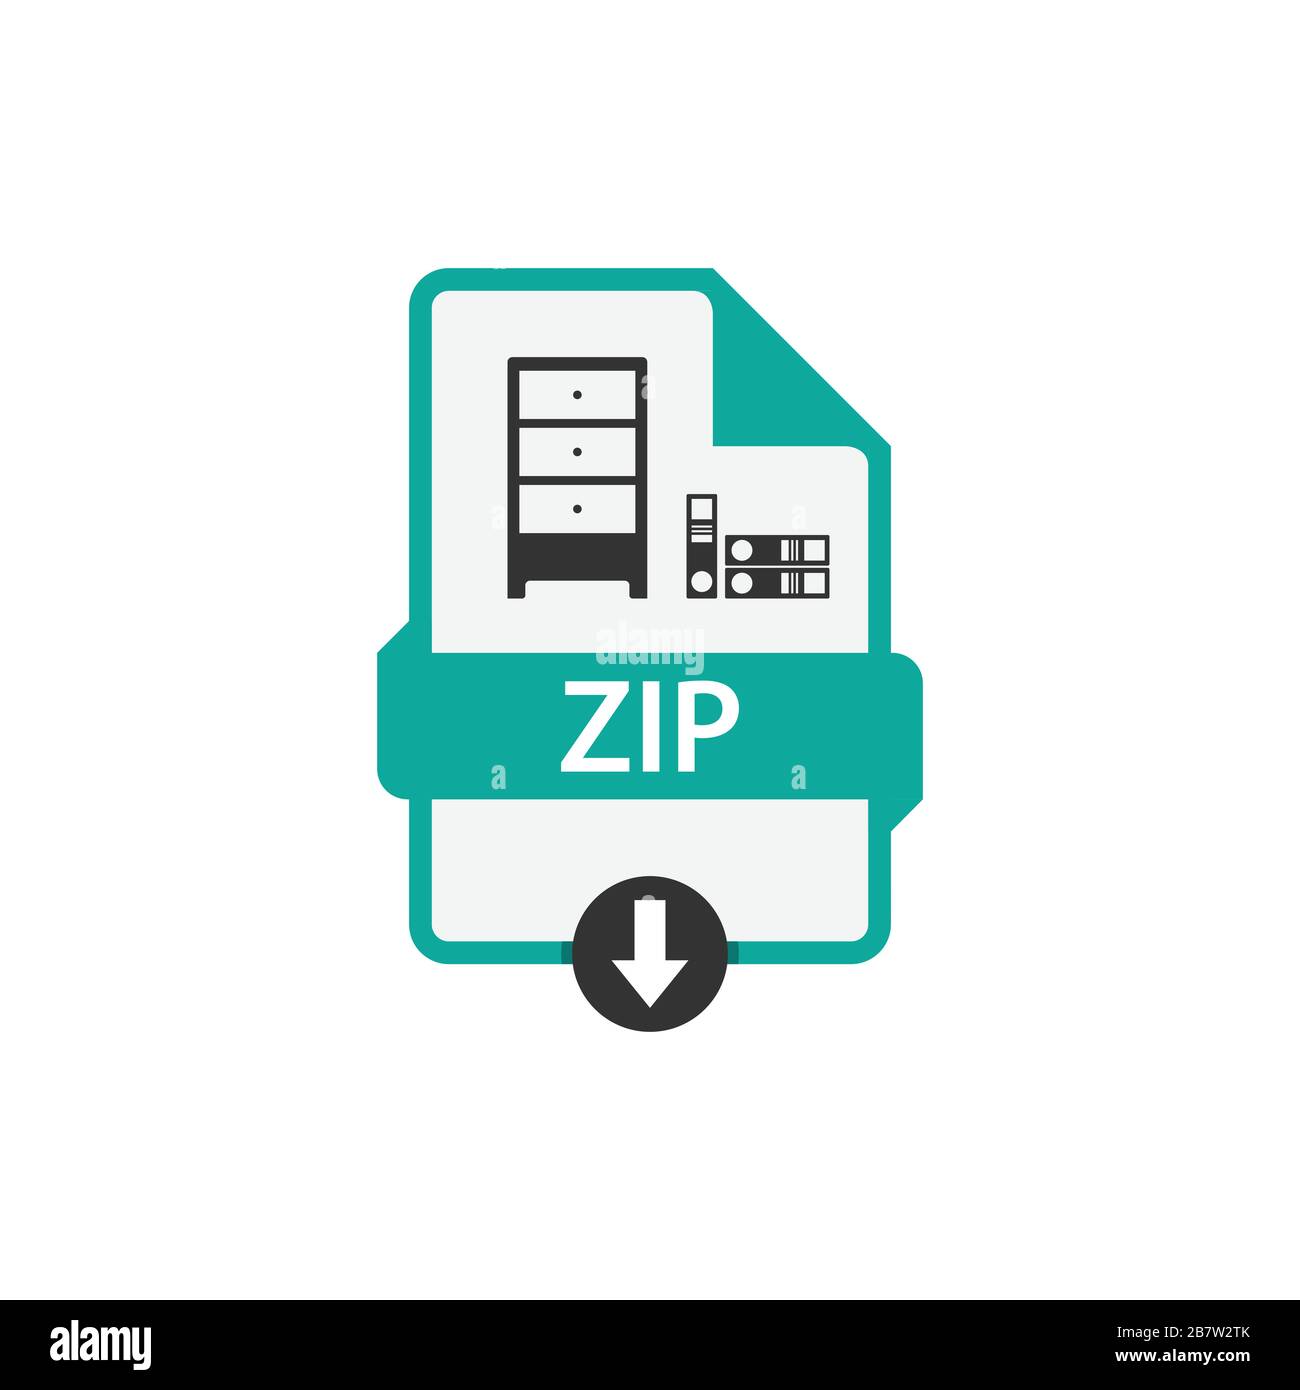 Immagine vettoriale per il download di documenti ZIP in formato file. Vettore grafico disegno piatto icona file ZIP Illustrazione Vettoriale